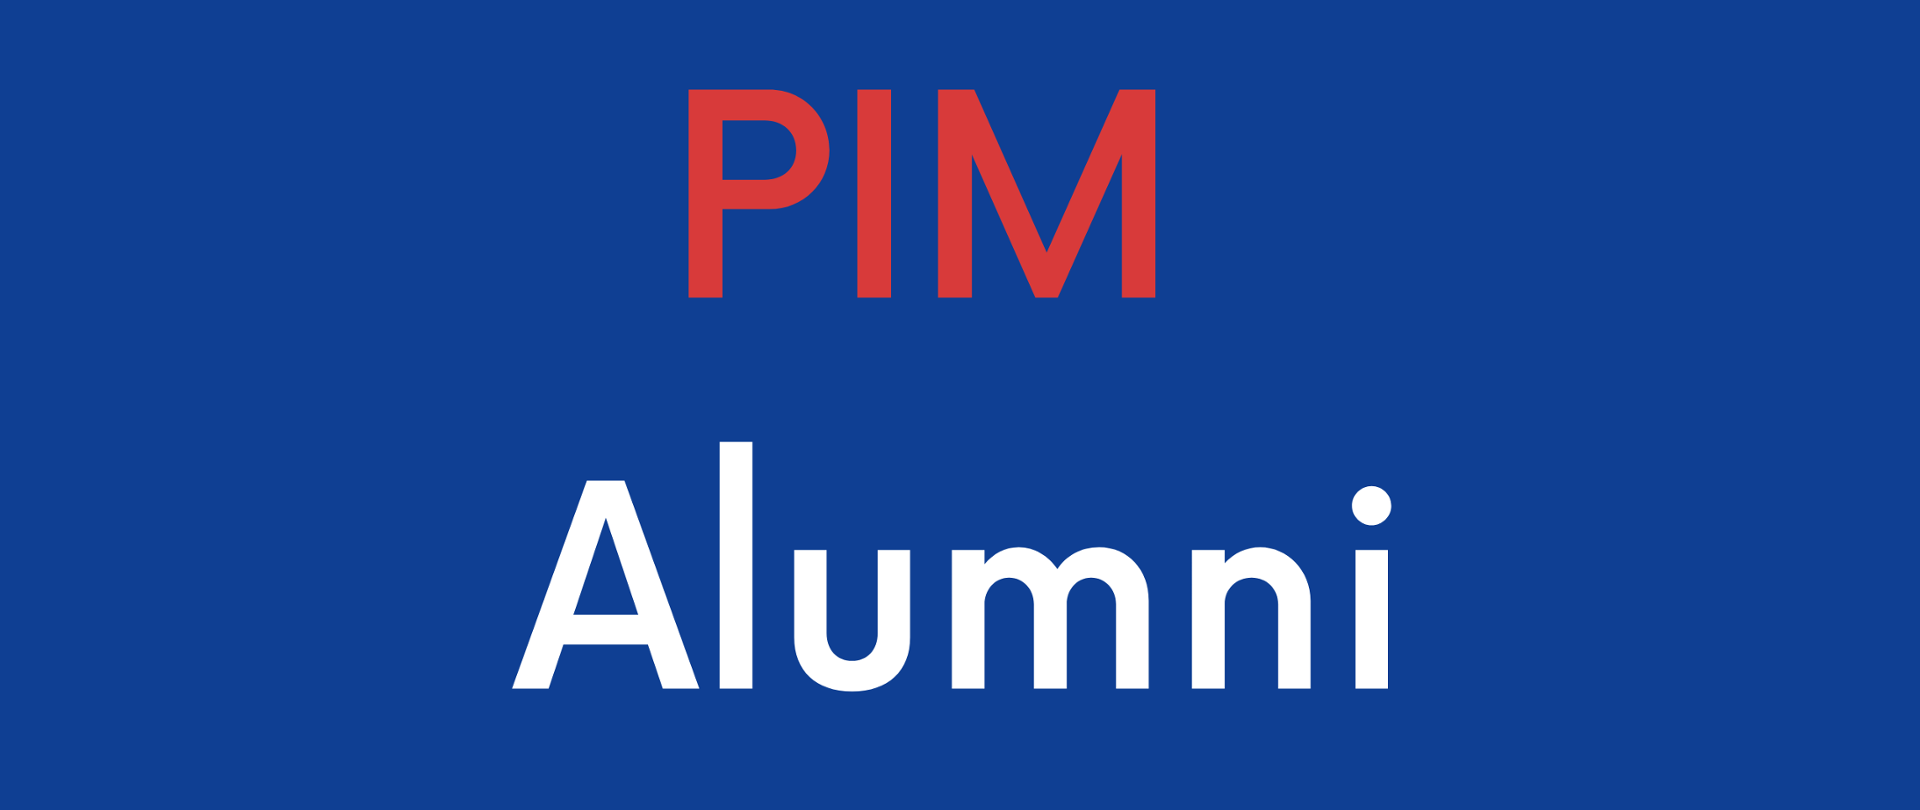 Baner z napisem PIM Alumni. PIM napisany czerwonym fontem, Alumni białym. Całość na granatowym tle. 